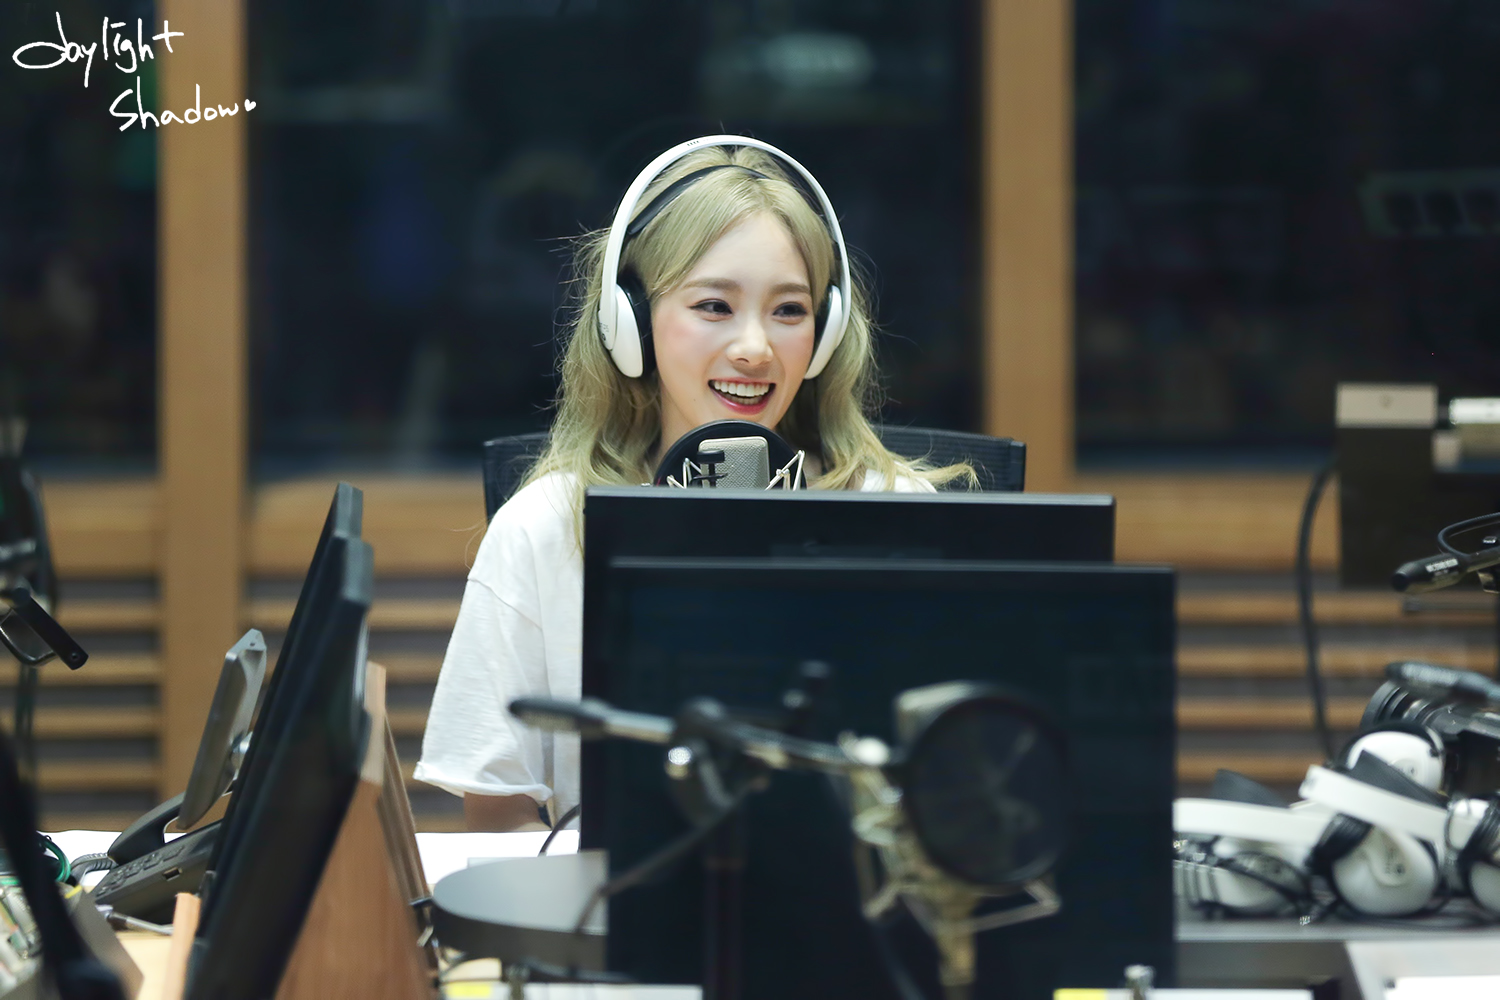 [OTHER][06-02-2015]Hình ảnh mới nhất từ DJ Sunny tại Radio MBC FM4U - "FM Date" - Page 32 2431A53F56A0B32010C3A6